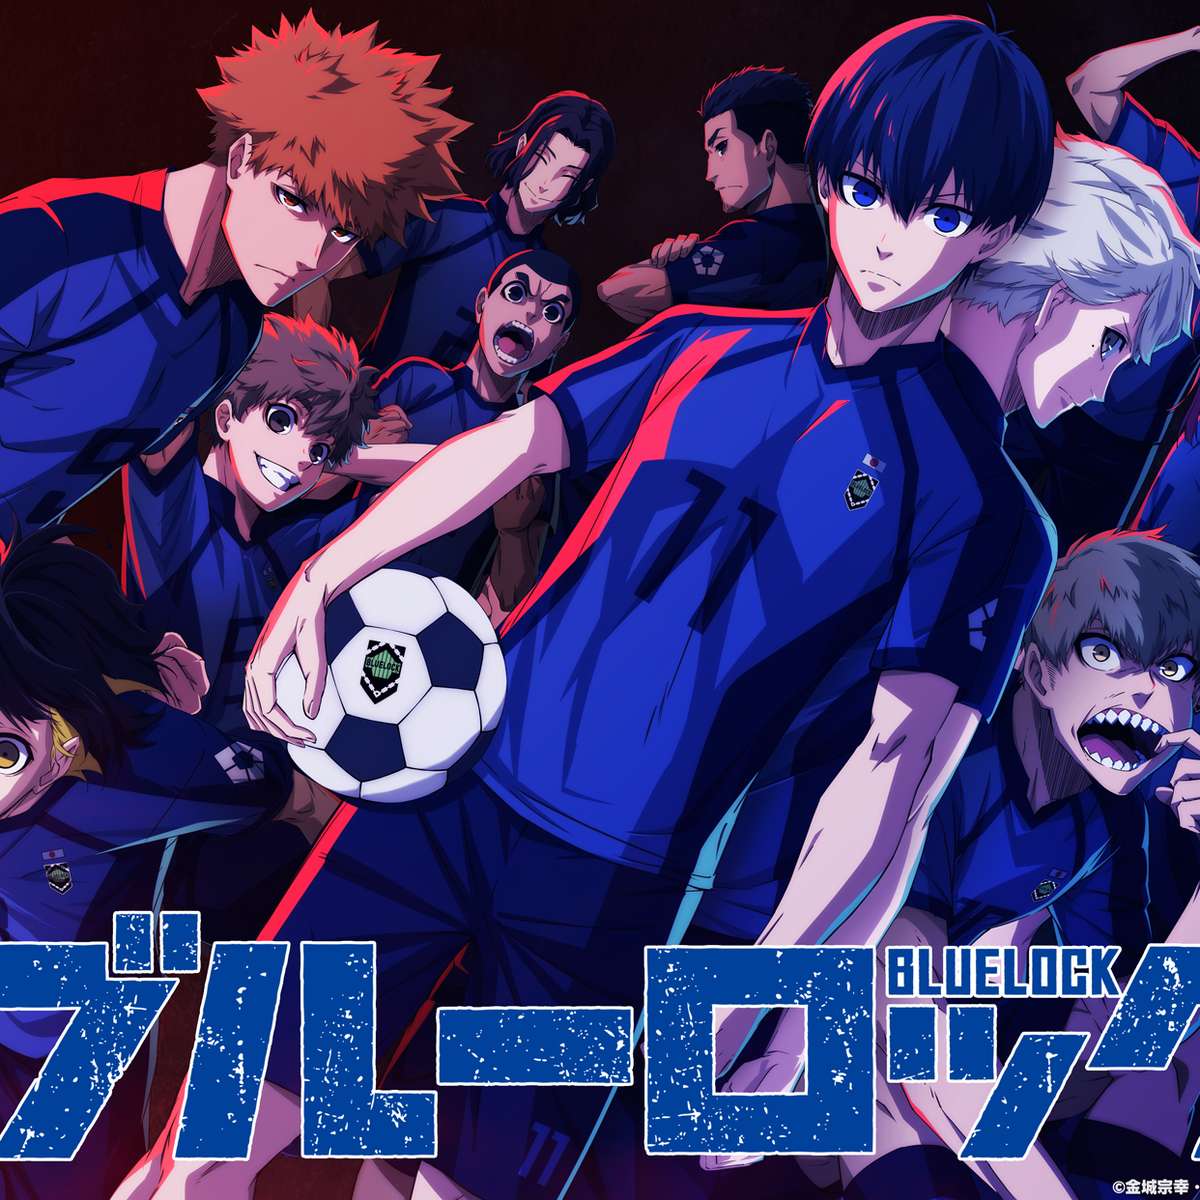 Aoashi e Blue Lock: 2022 é o ano dos animes de futebol